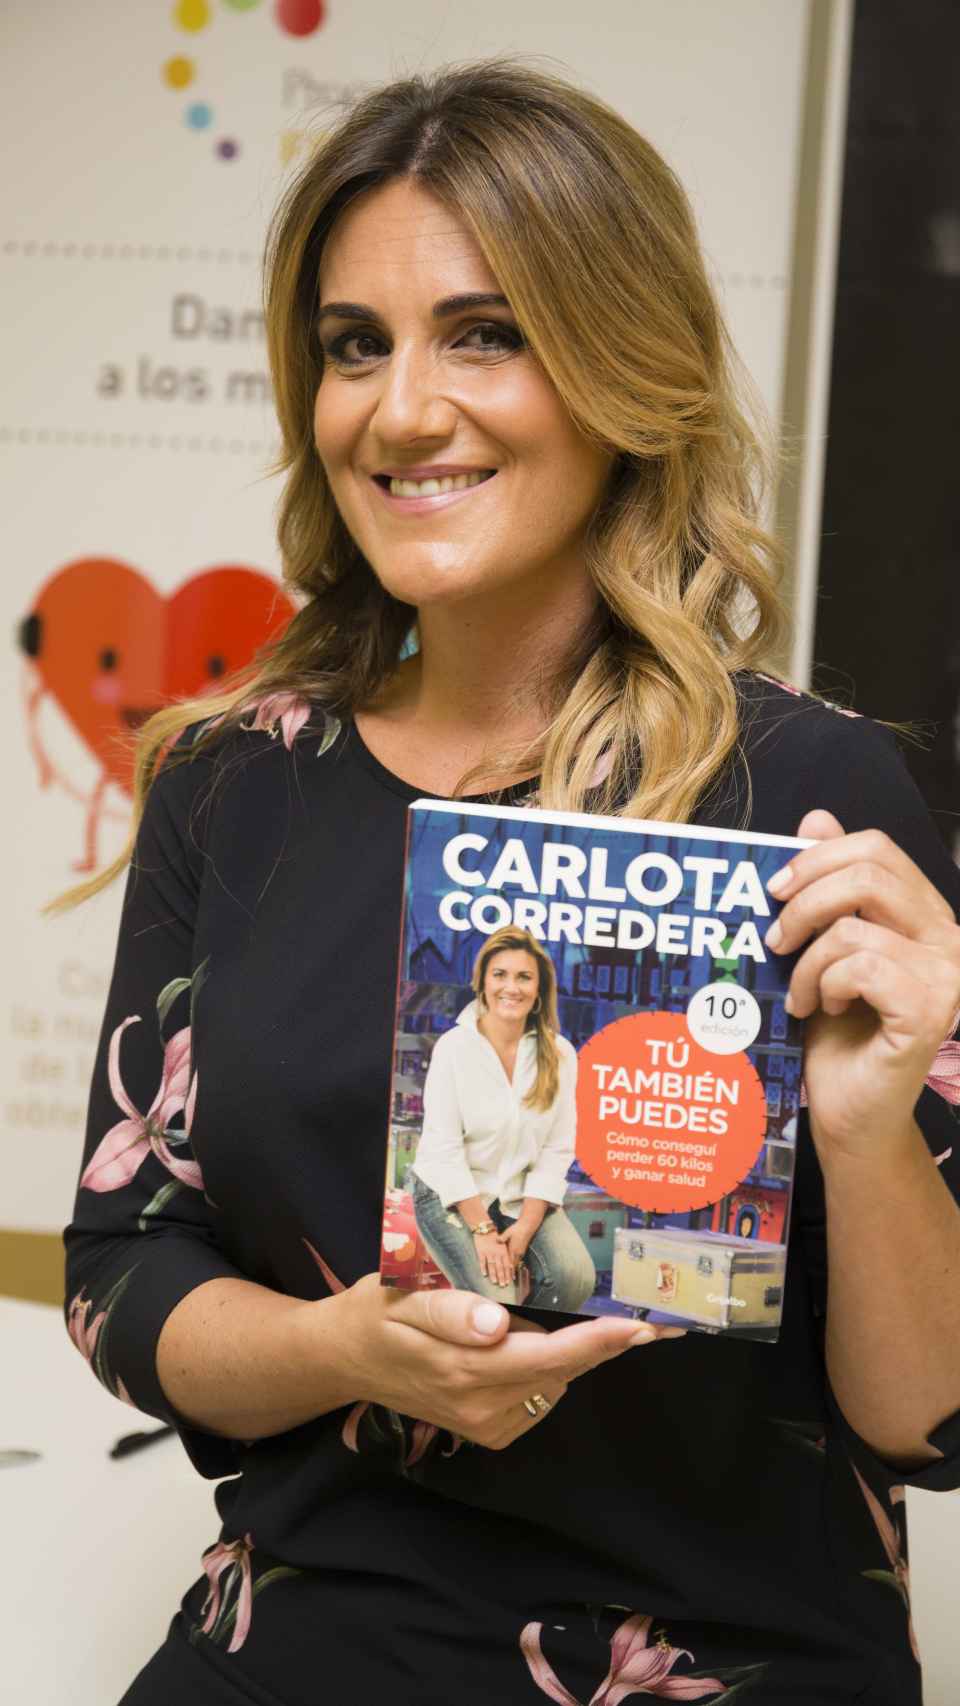 Carlota Corredera.